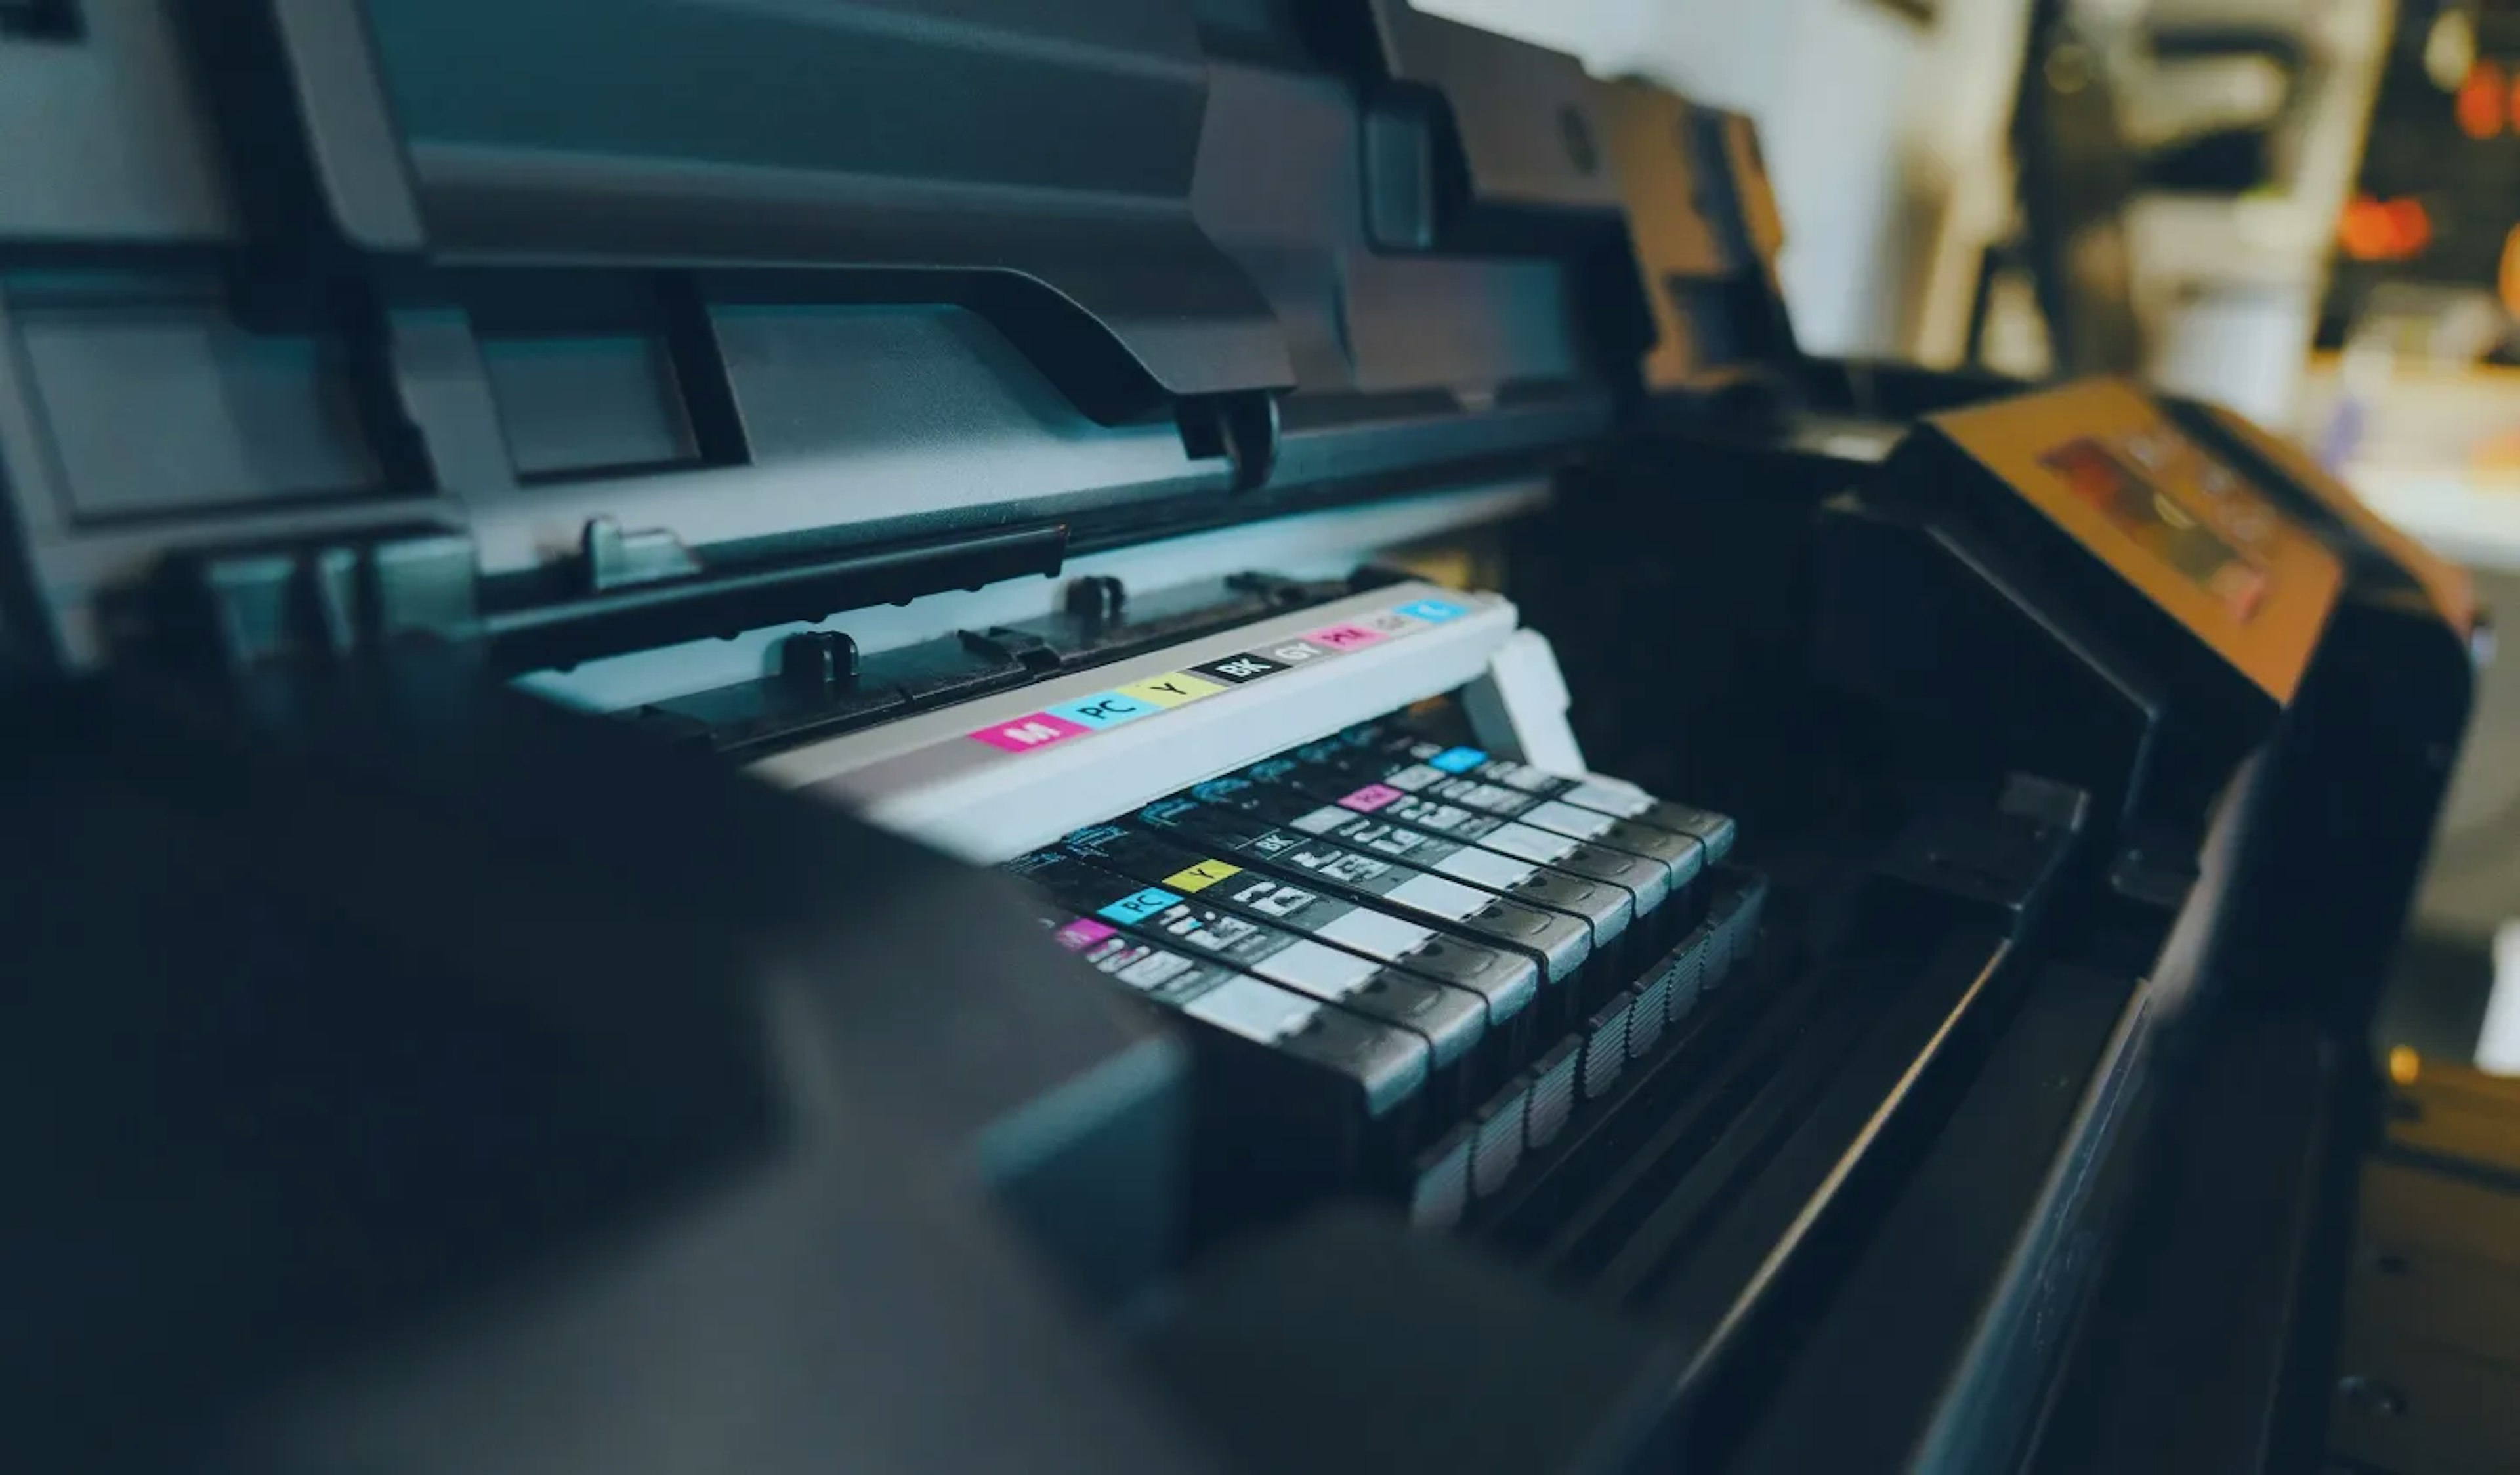 Co to jest kartridż w drukarce? Jak go używać?